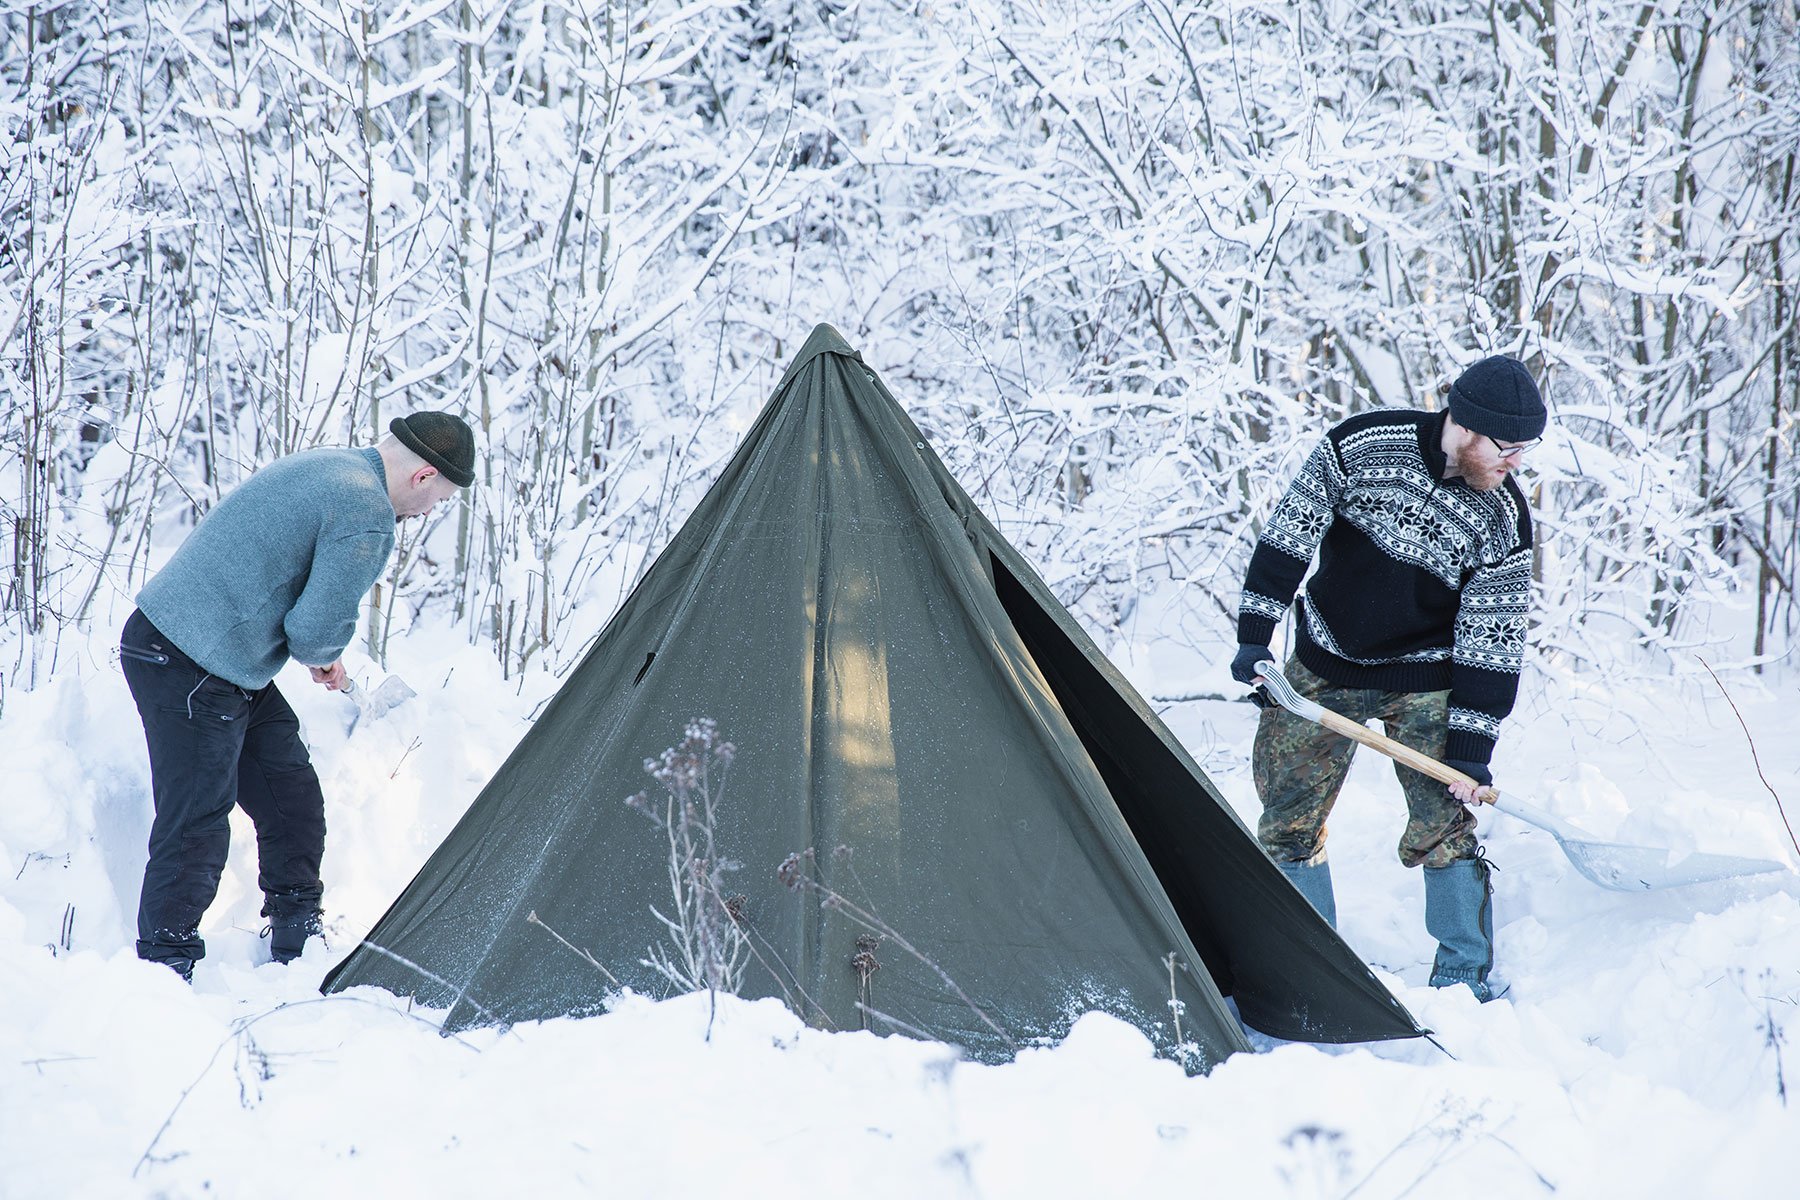 Teltta pystytettynä lumeen lumisen metsän reunaan. Kaksi miestä lapio lunta teltan ympäriltä.